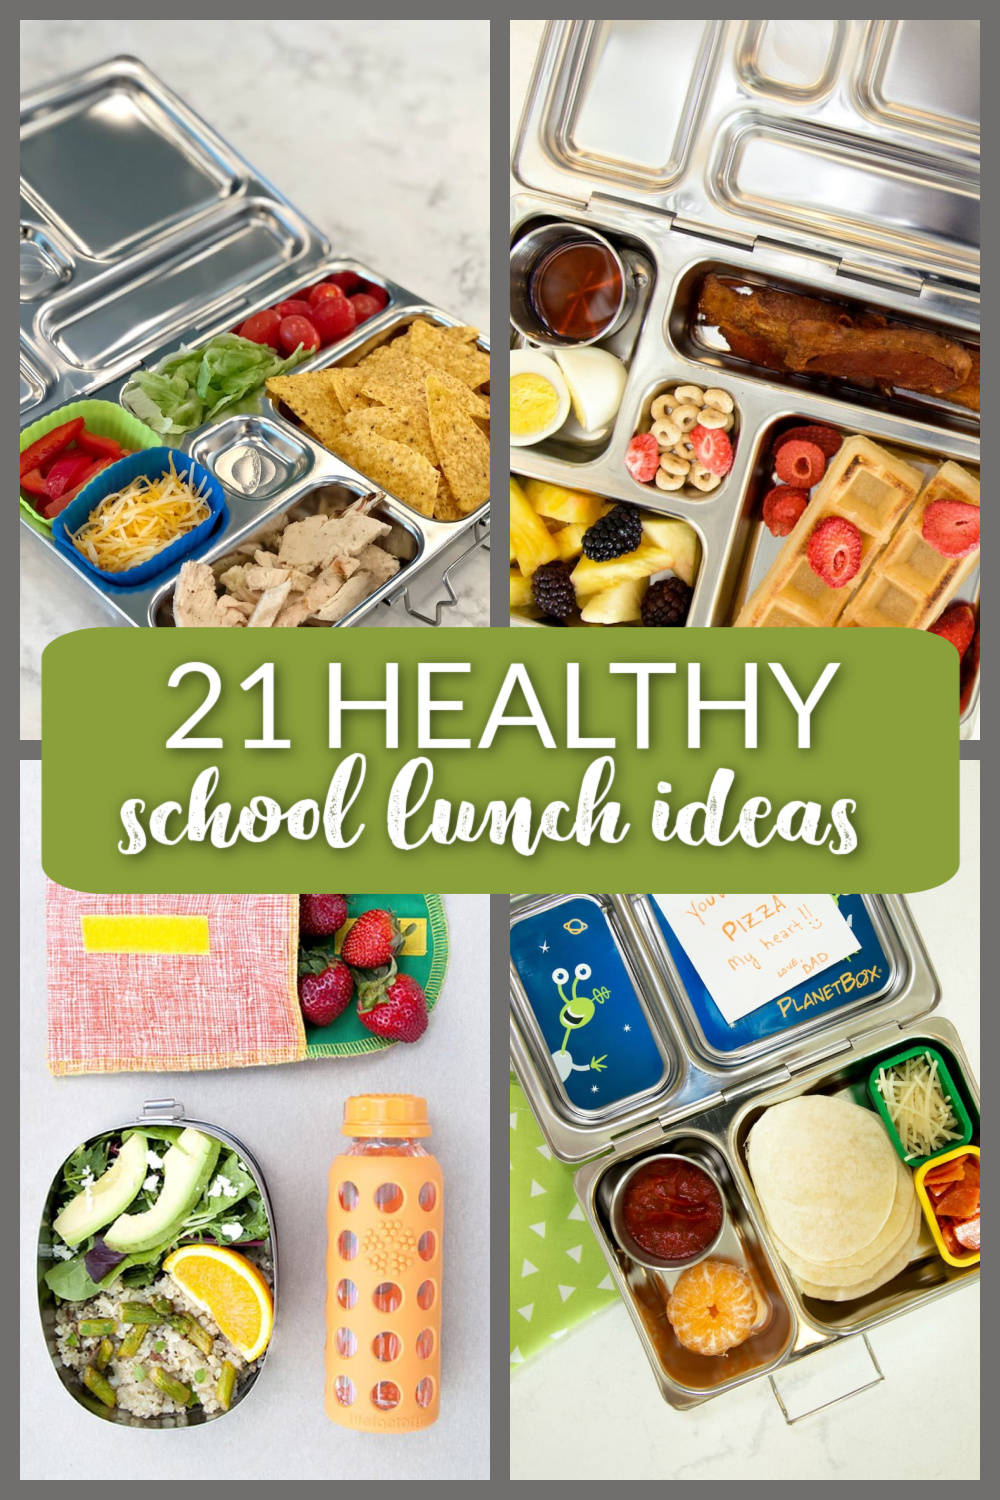 21 Healthy School Lunch Ideas for Kids